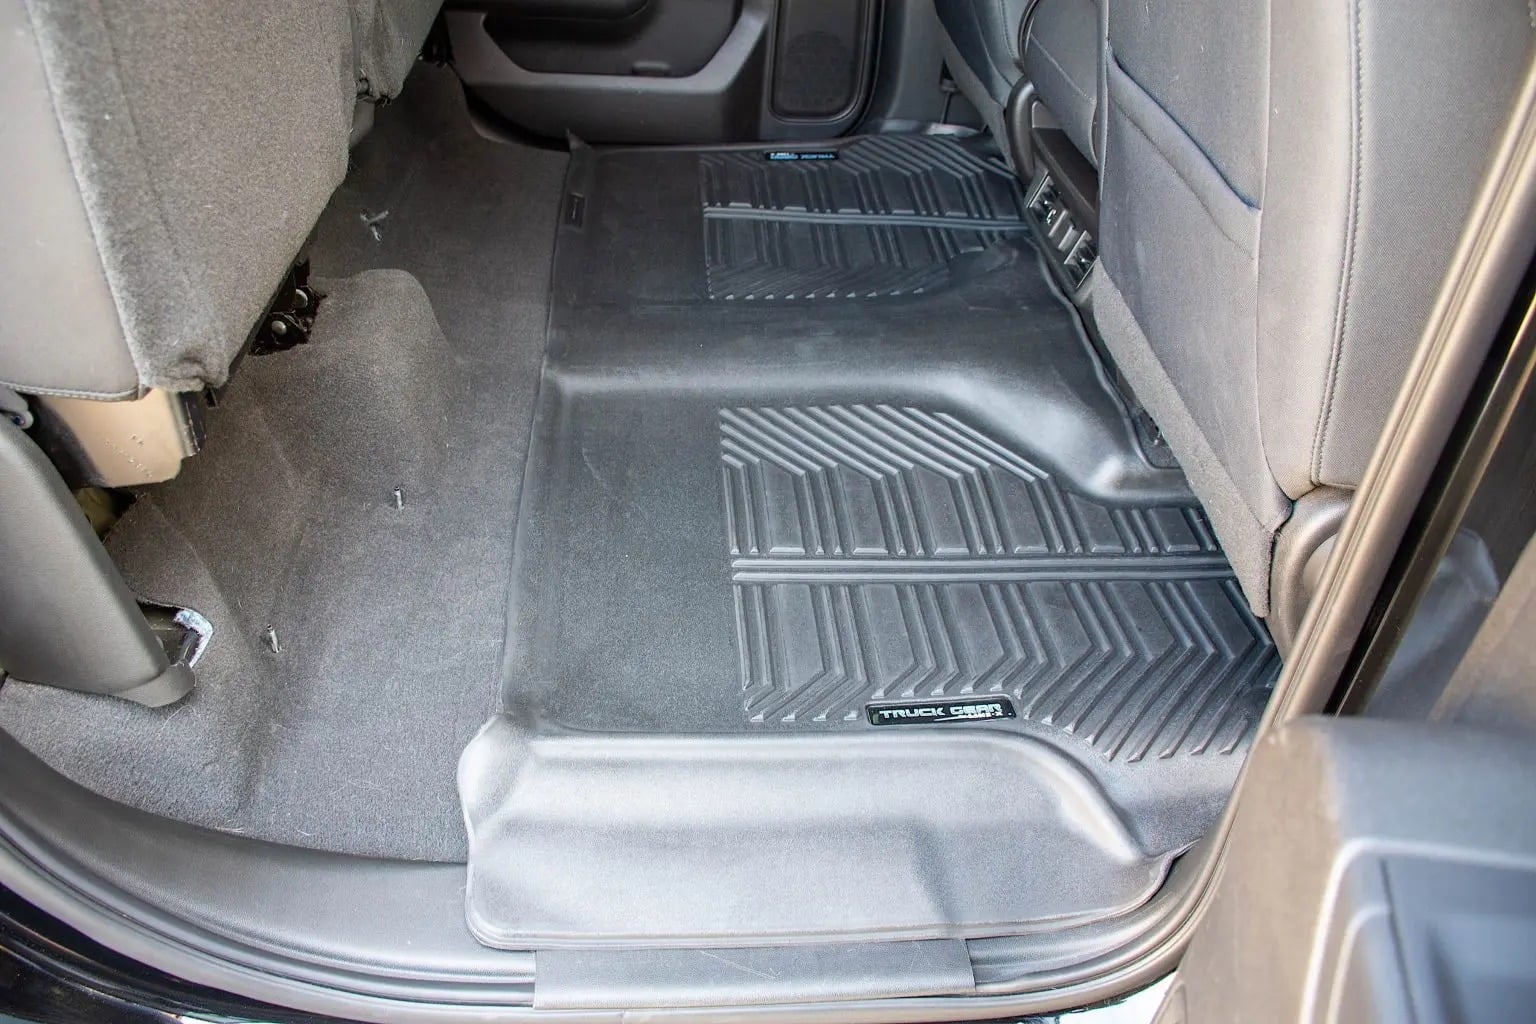 Truck Gear by Line-X floor mats